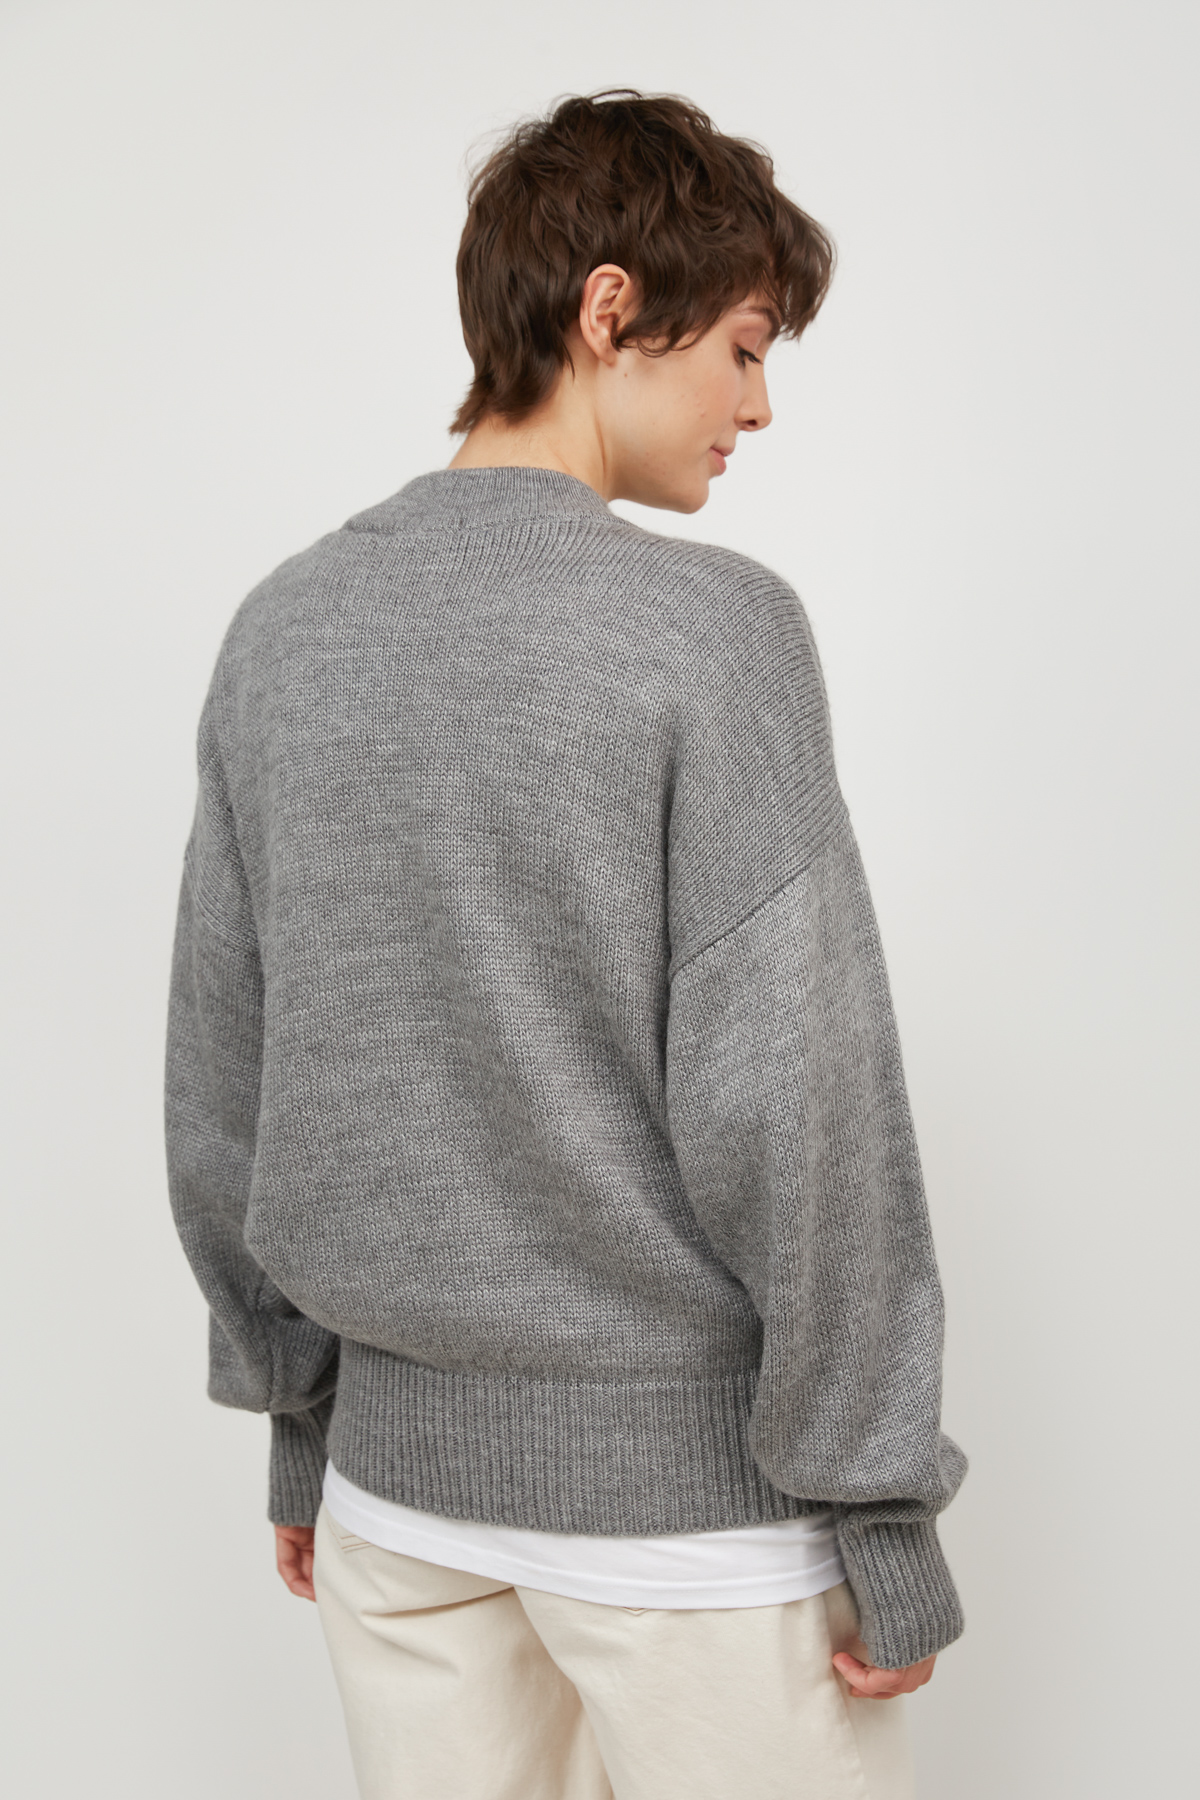 Gray knit sweater, photo 5